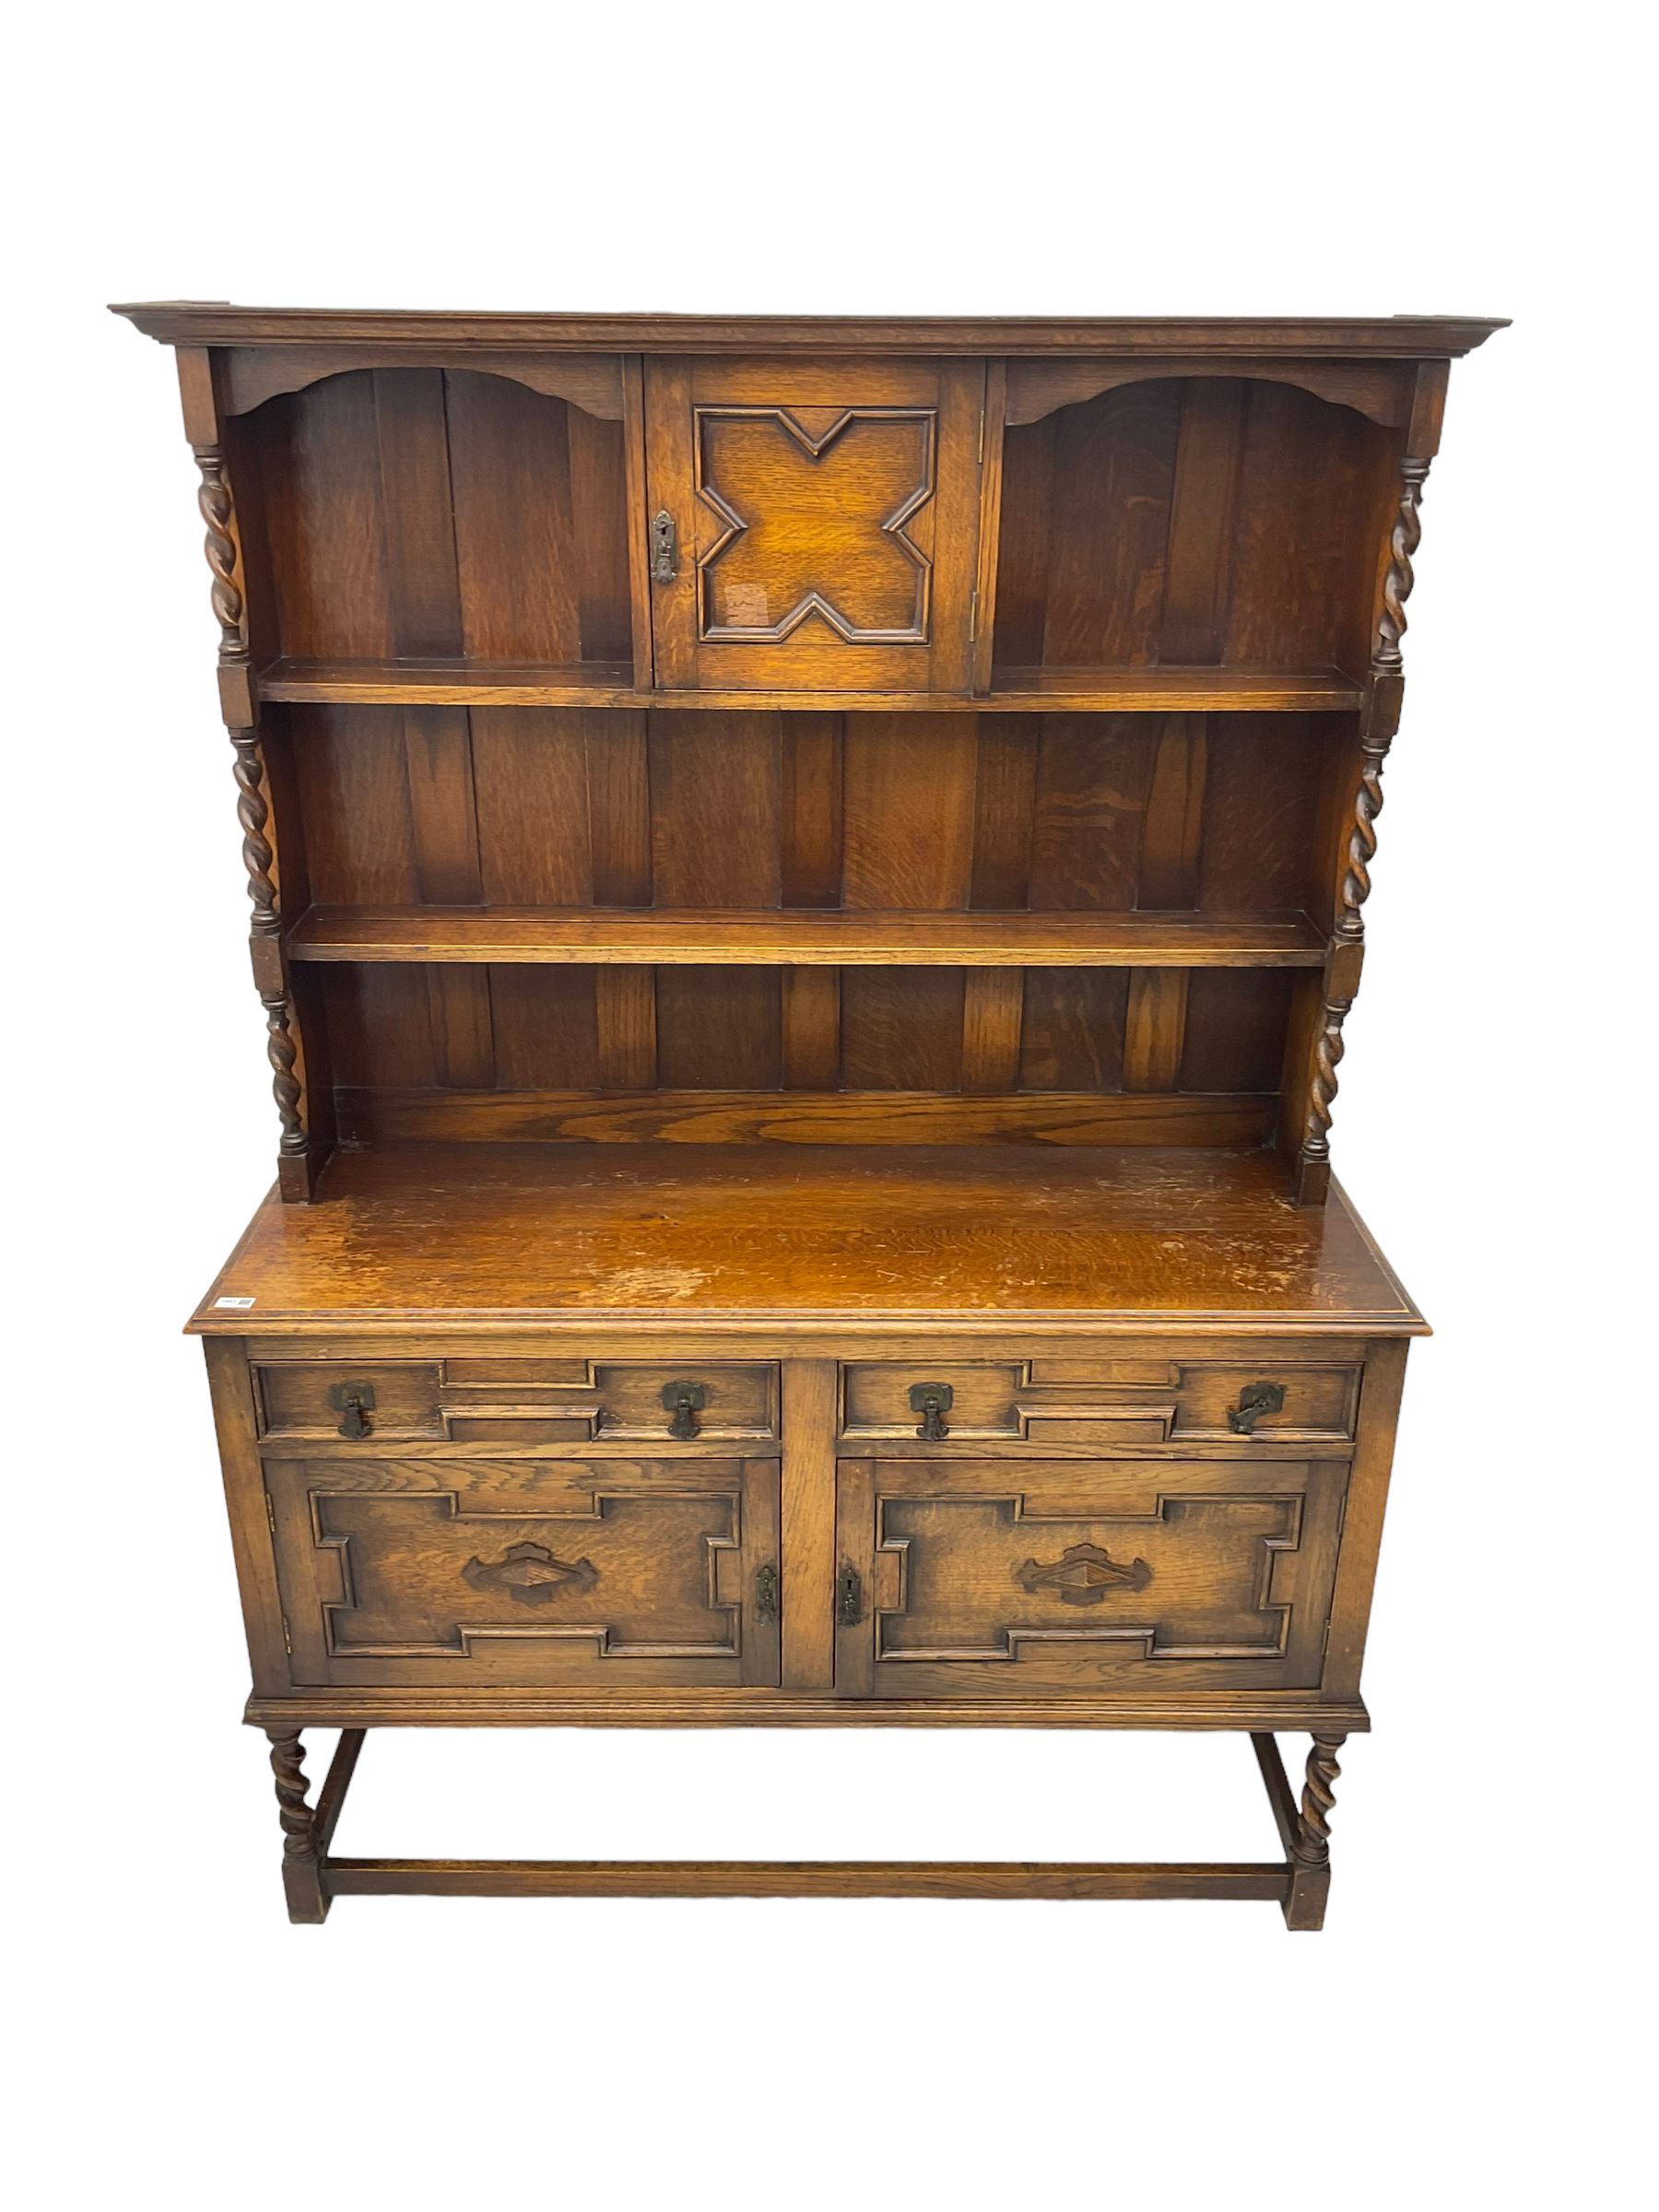 Early 20th century oak dresser - Image 2 of 6